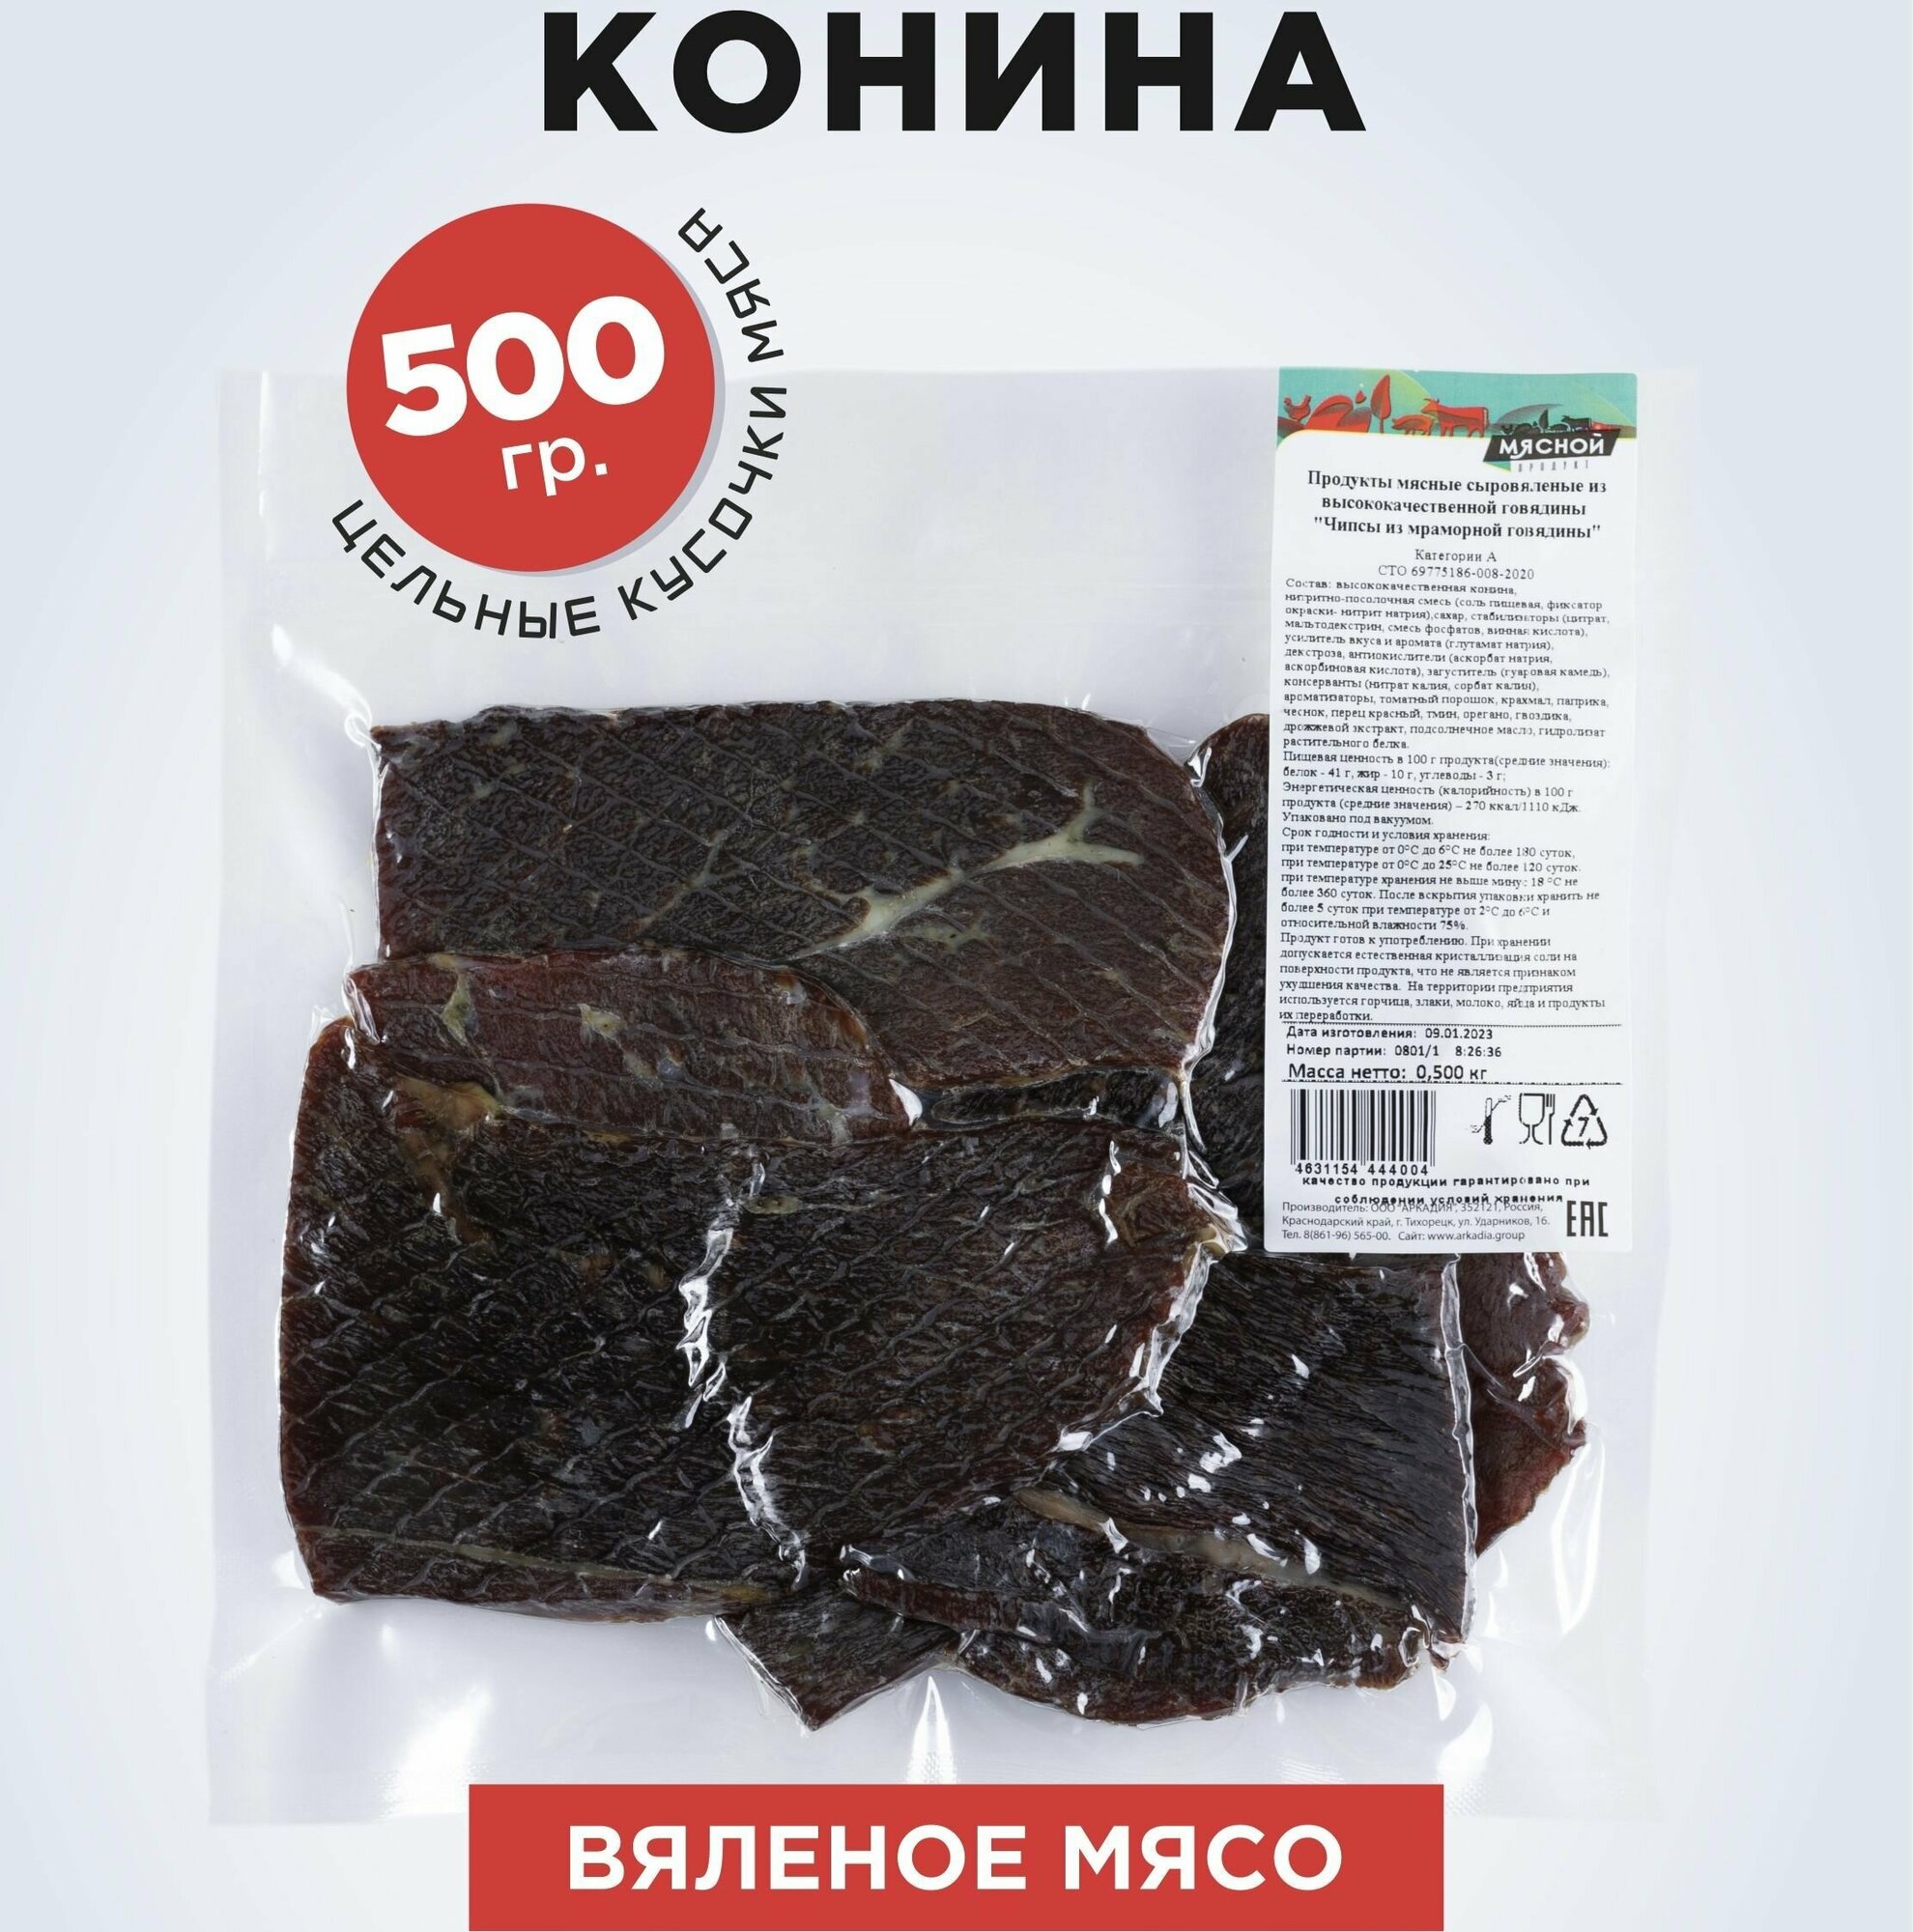 Вяленое мясо Мясной продукт из конины 500 г.